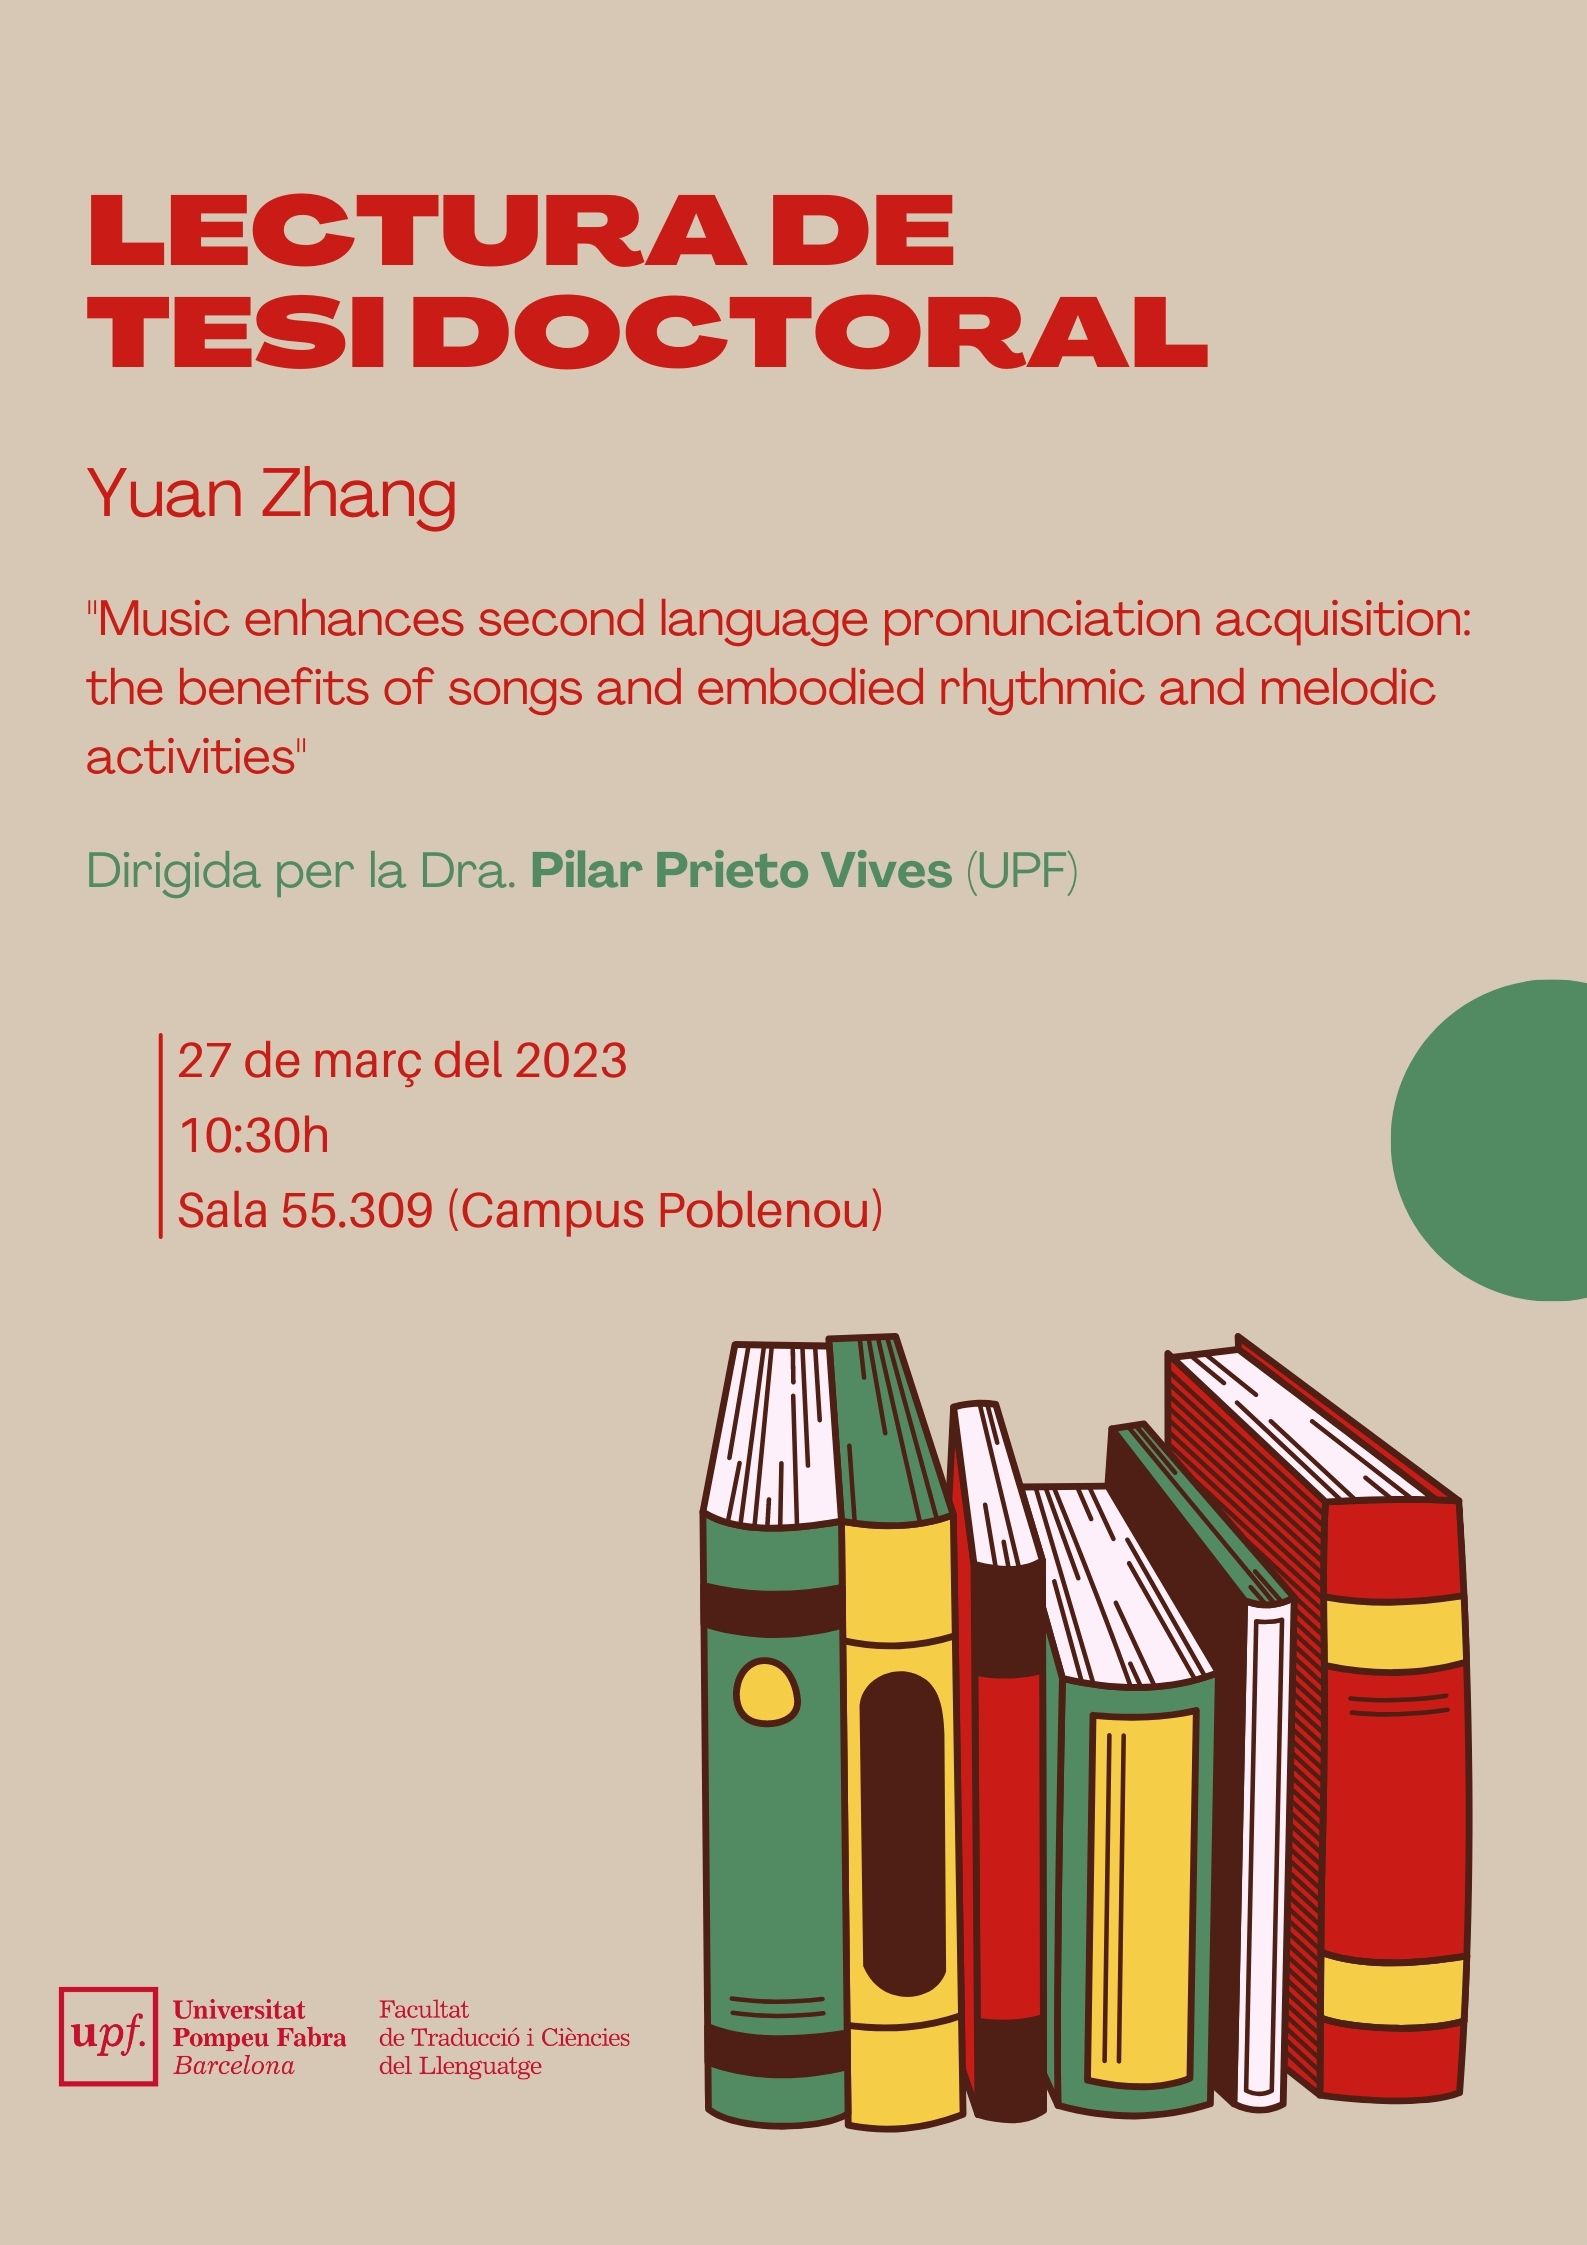 27/03/2023 Lectura de la tesi doctoral de Yuan Zhang, a les 10.30 hores